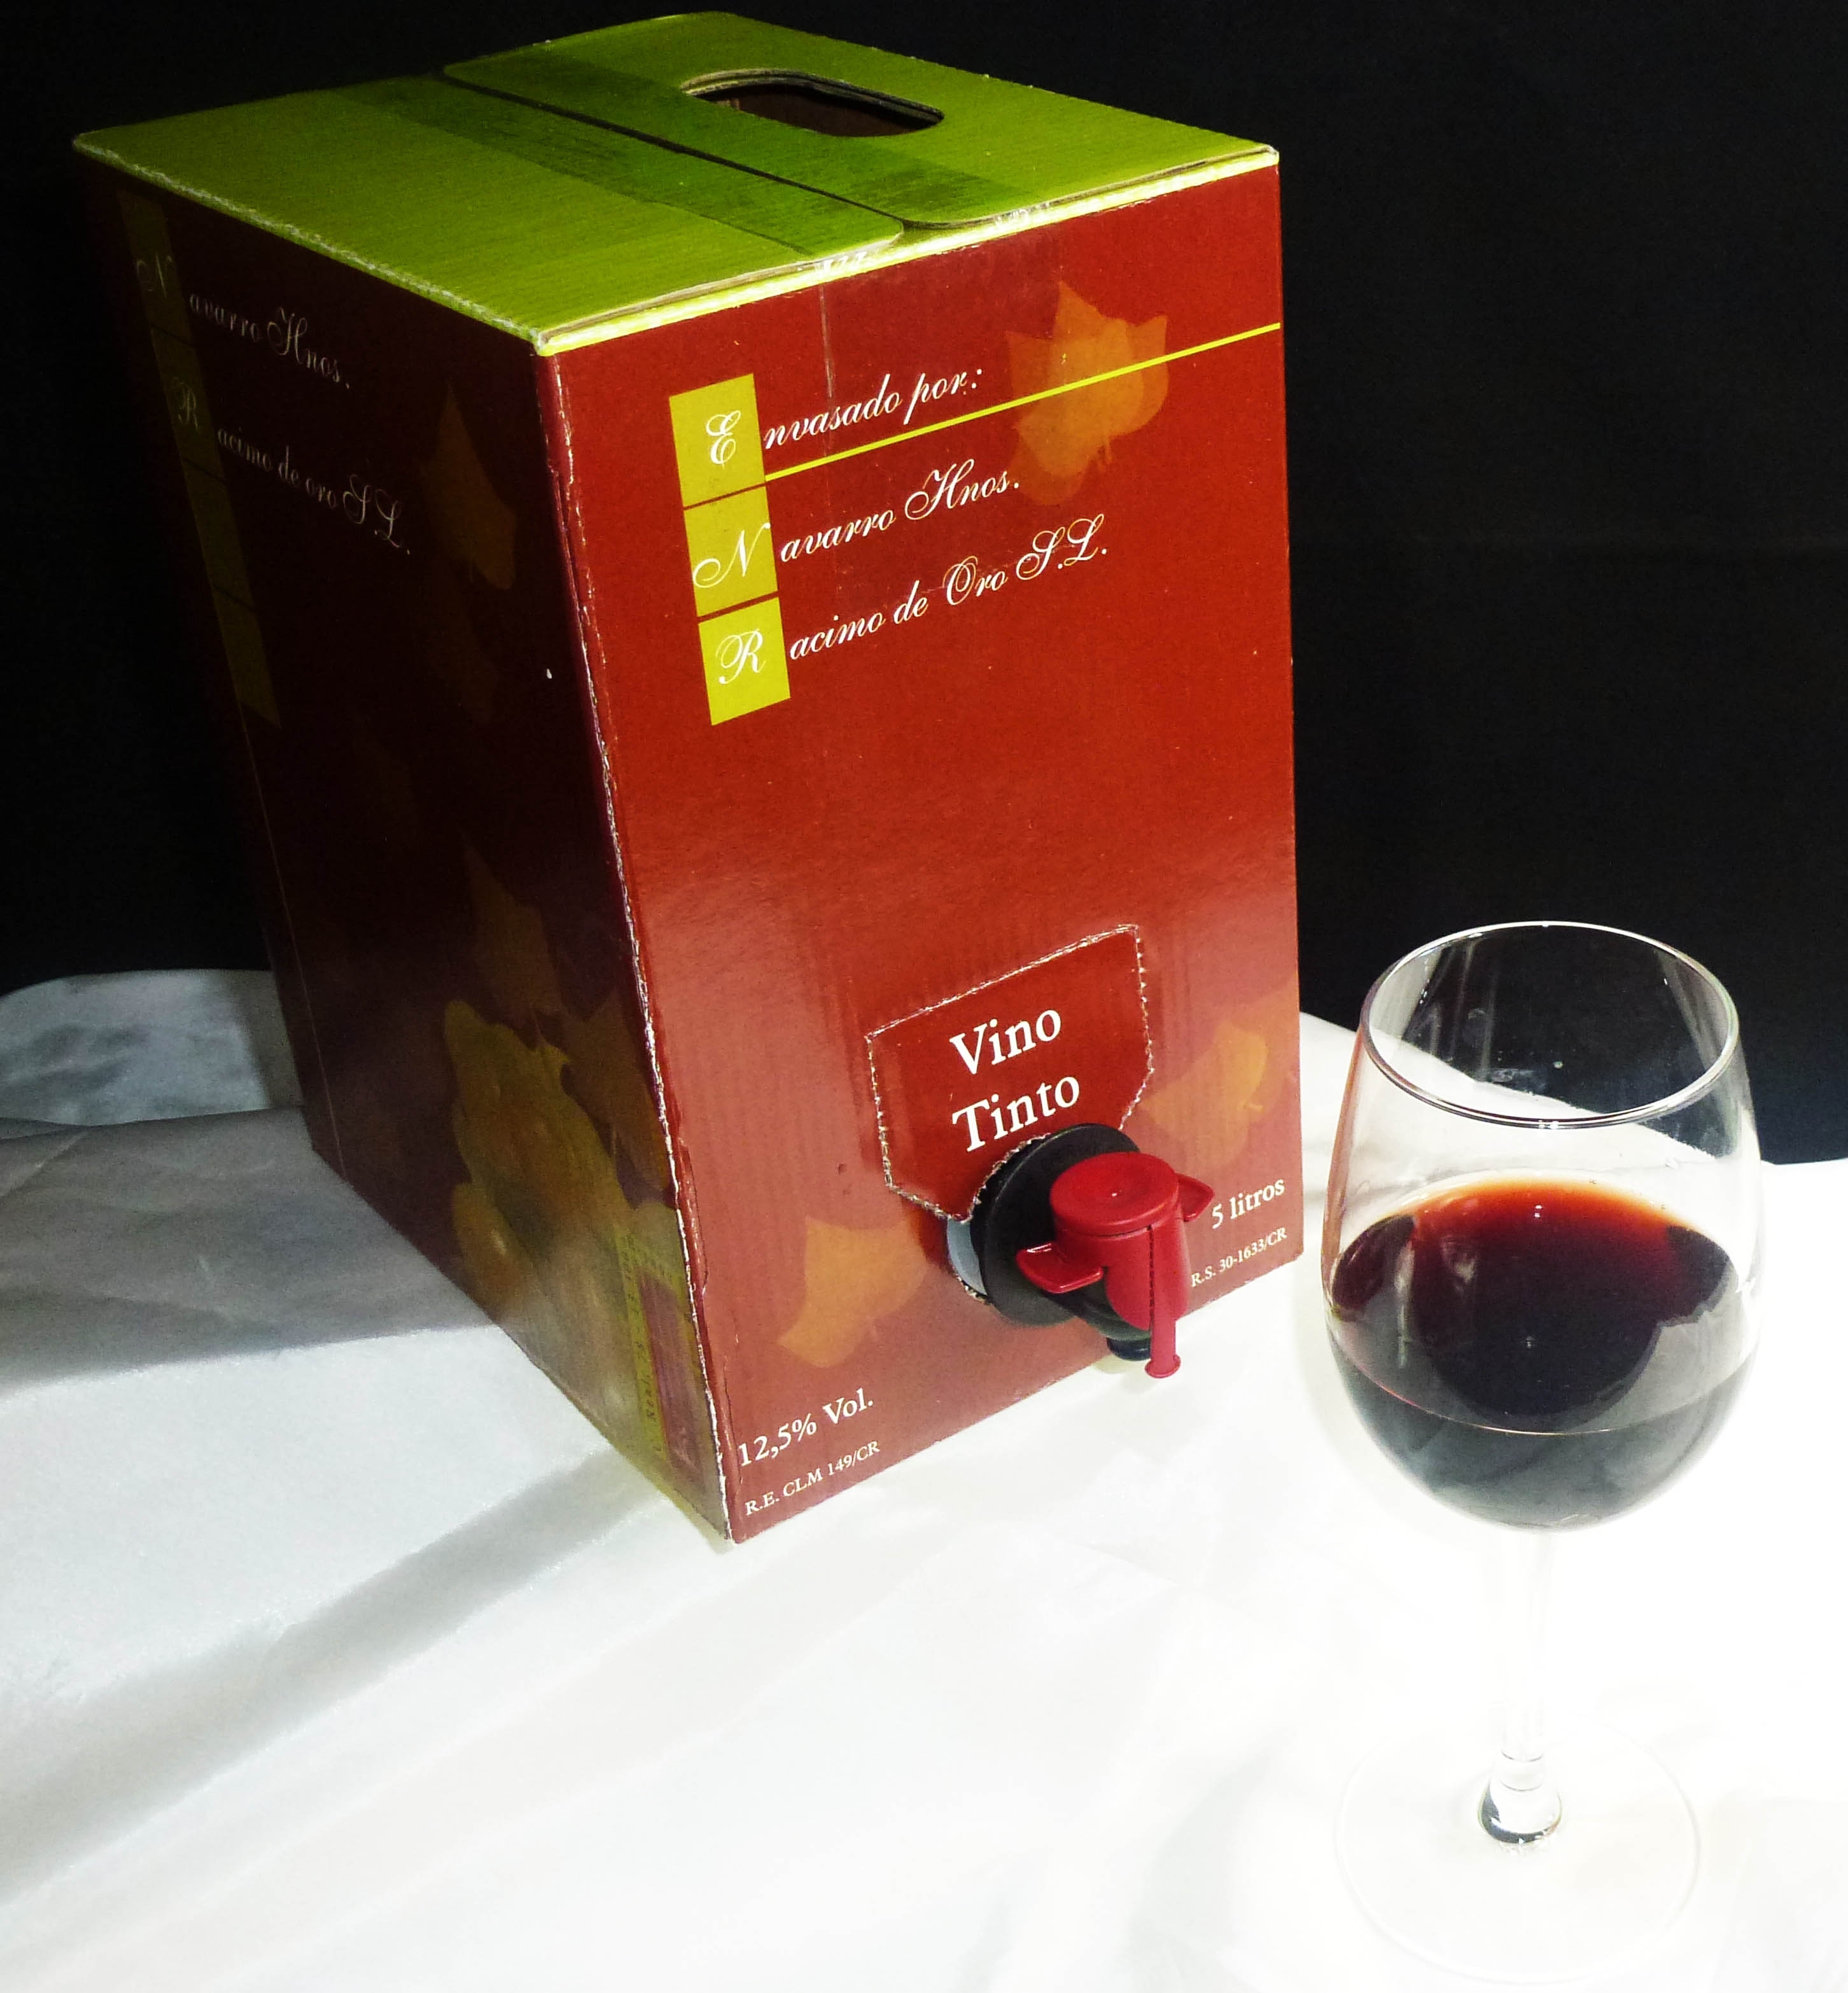 3 коробки вино. Вино в коробках с краником. Вино в картонной коробке с краником. Вино в пакетах с краником. Вино в тетрапаке с краником.